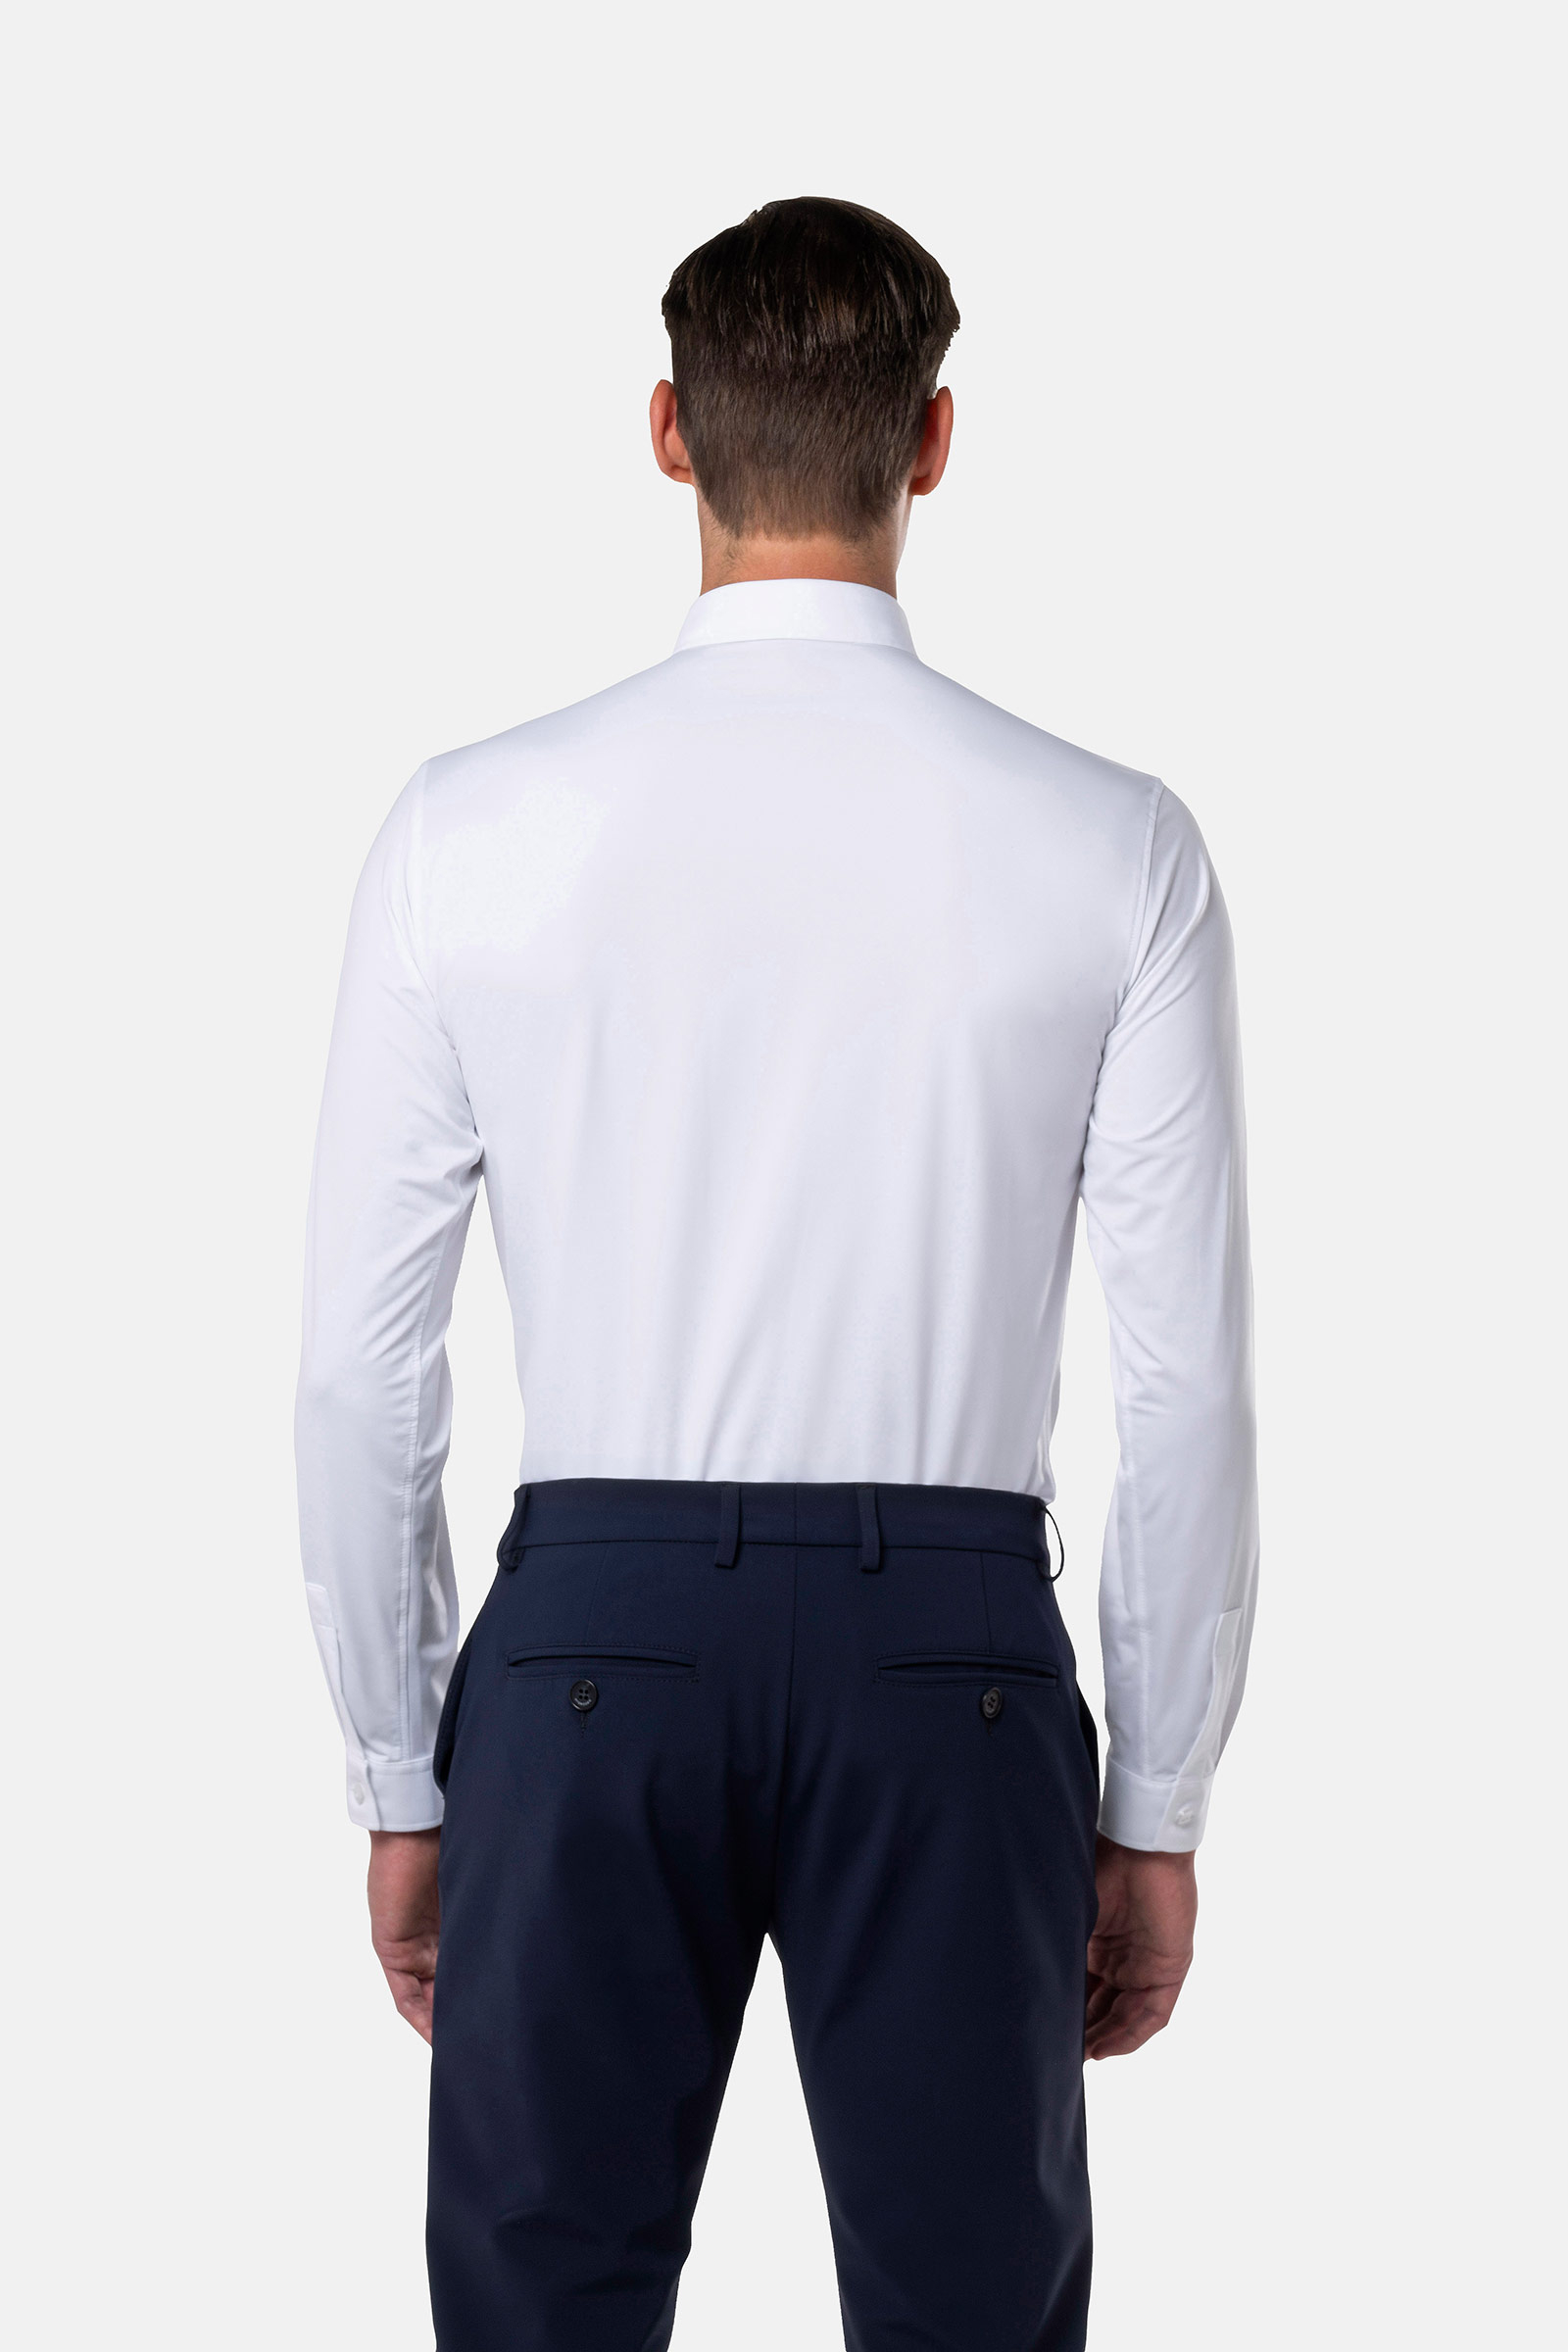 CYBER SHIRT - WHITE OXFORD - Hydrogen - Luxury Sportwear